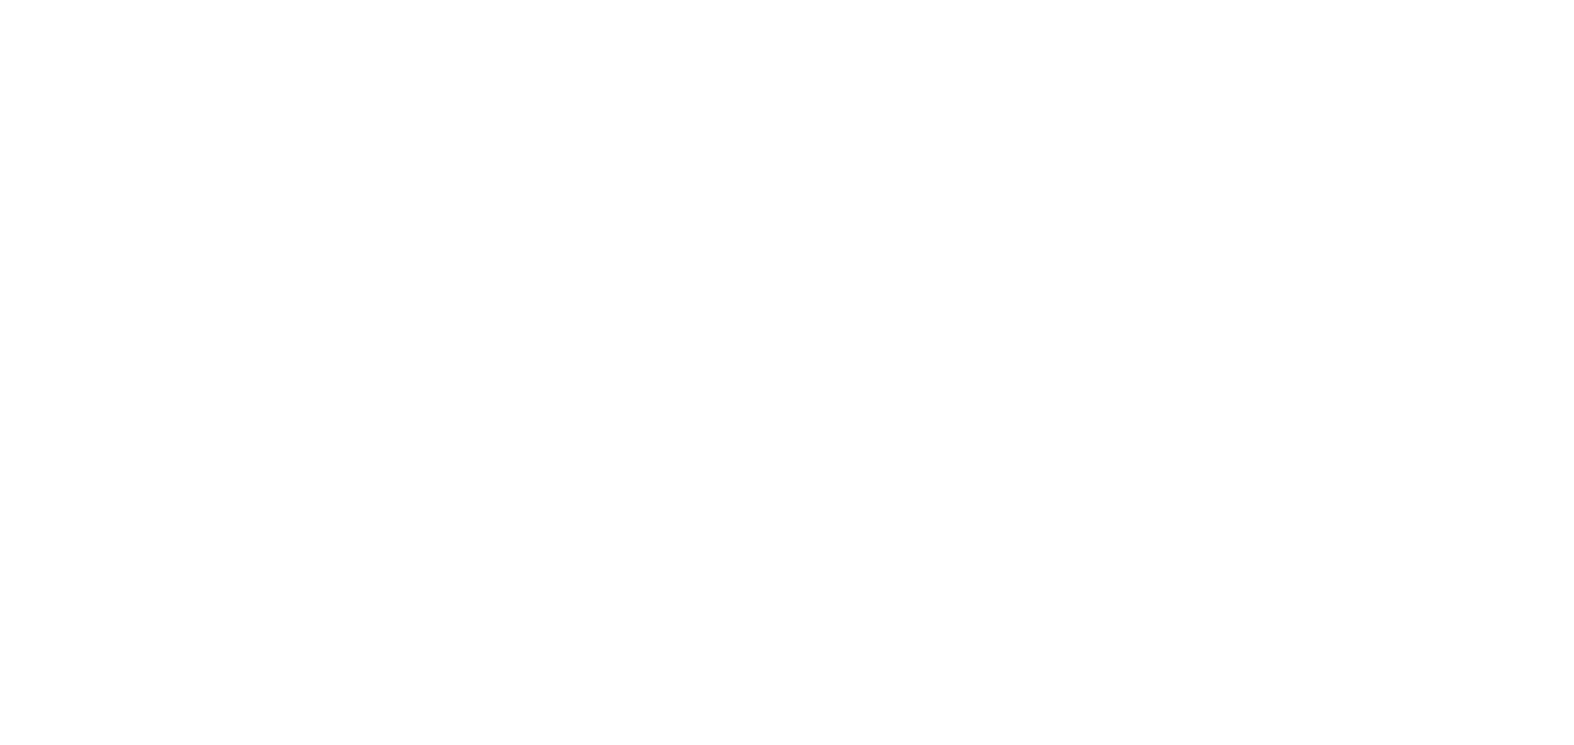 Soul Reflection Co.